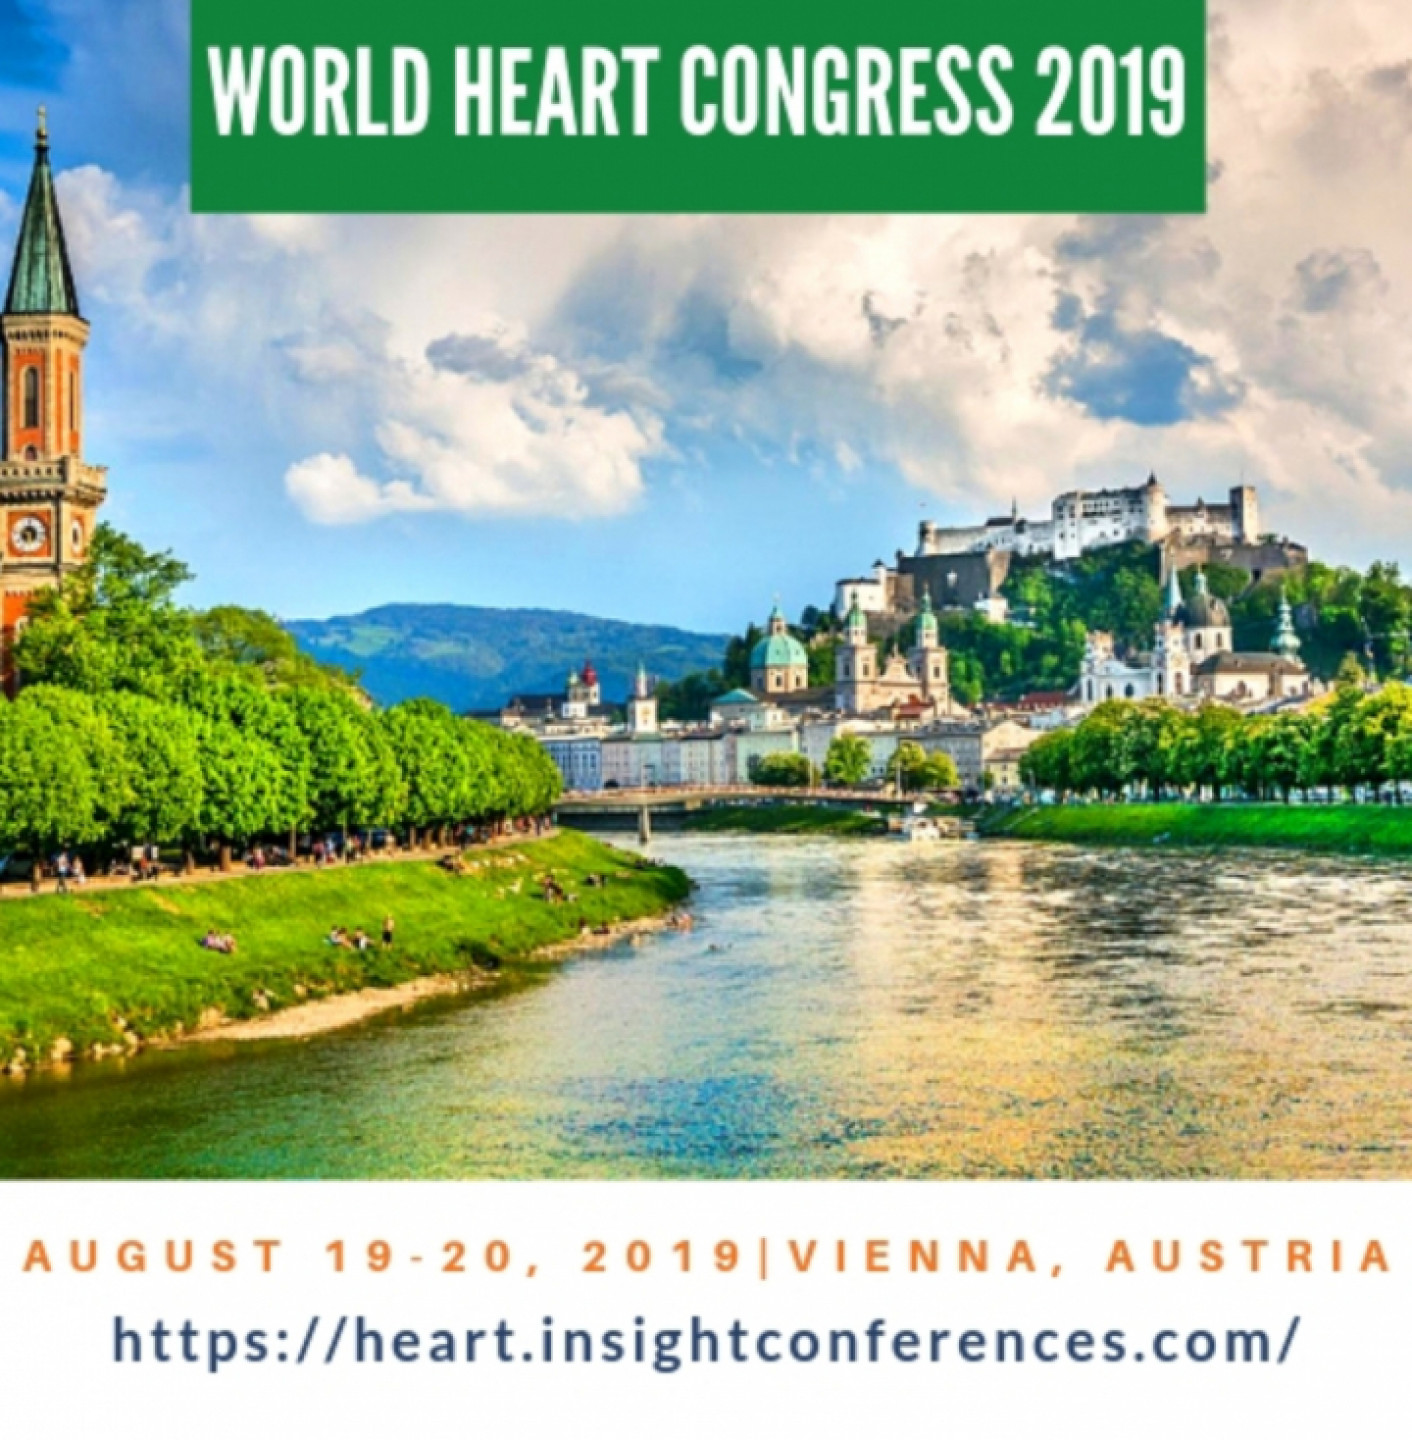 7th World Heart Congress